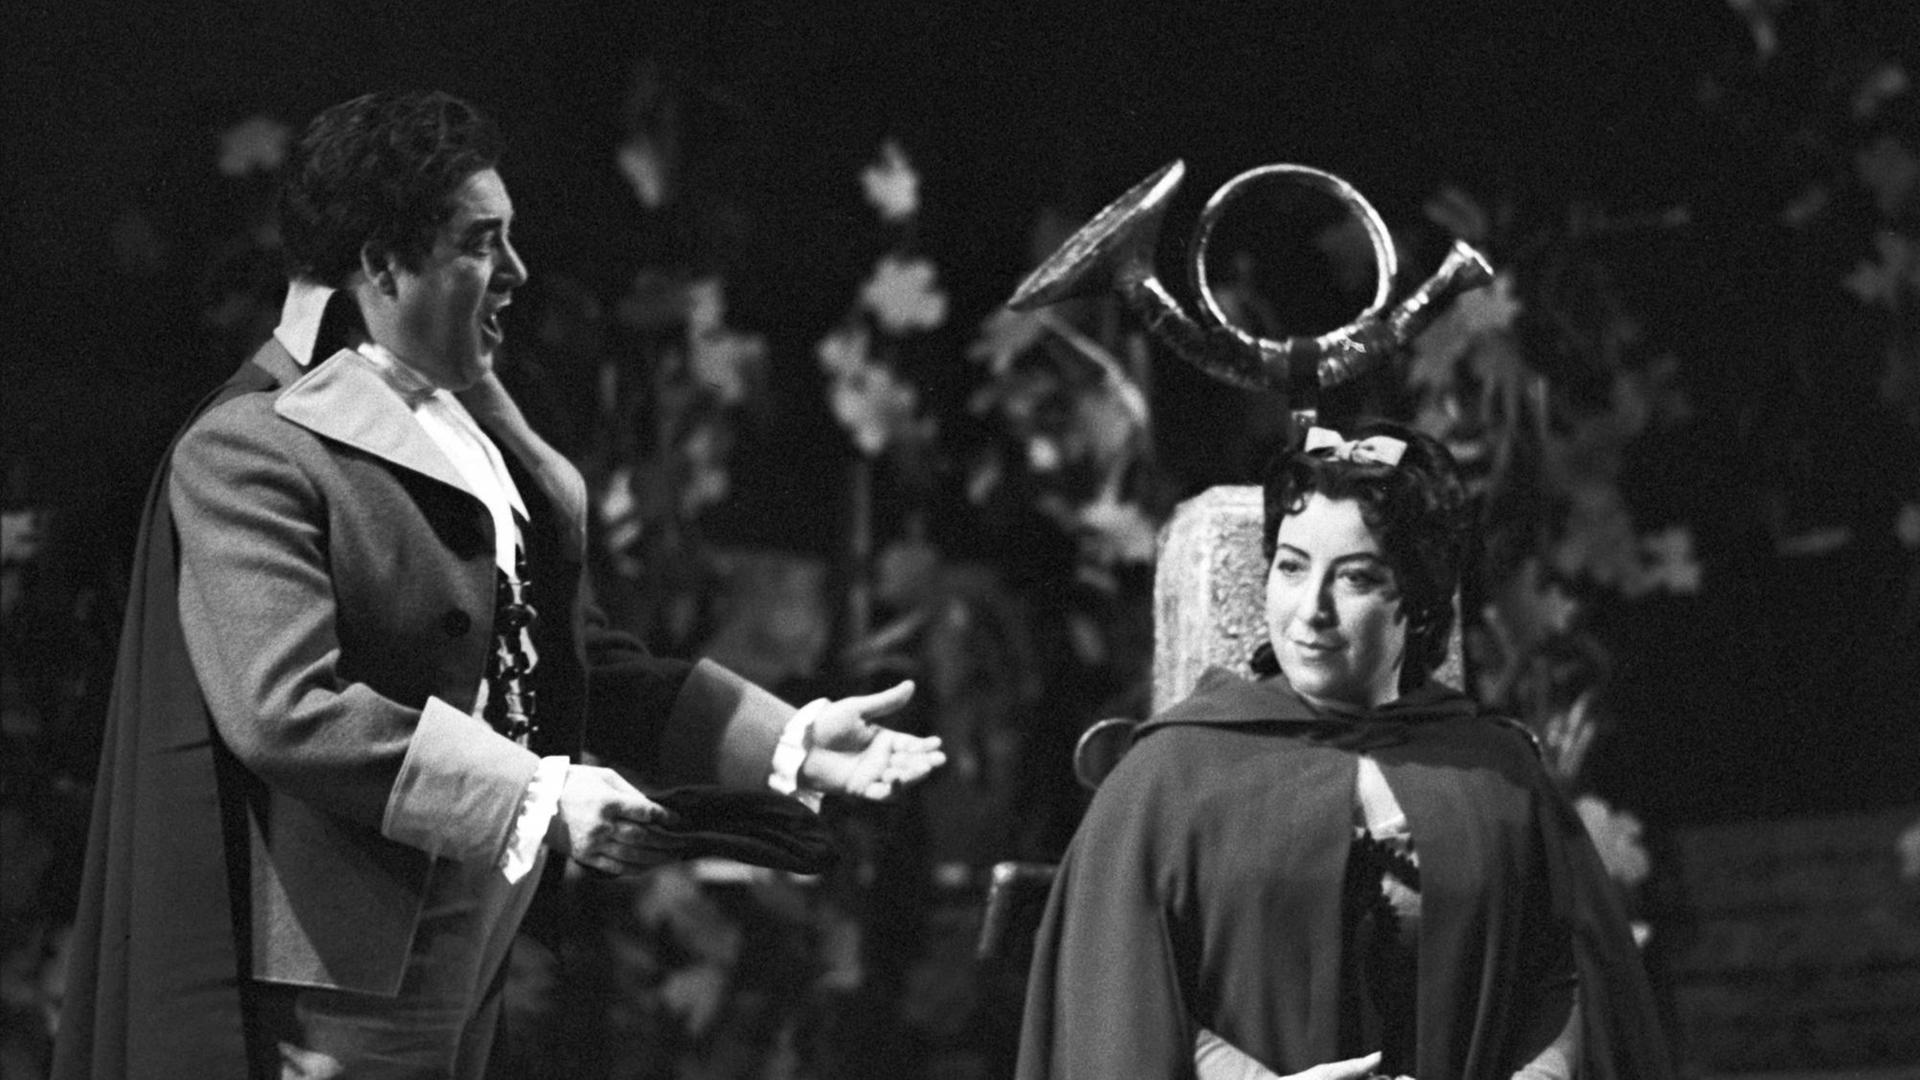 Die Sopranistin Anny Schlemm als Manon (r) und der Tenor Josef Traxel als des Grieux (l) stehen am 06.04.1963 auf der Bühne